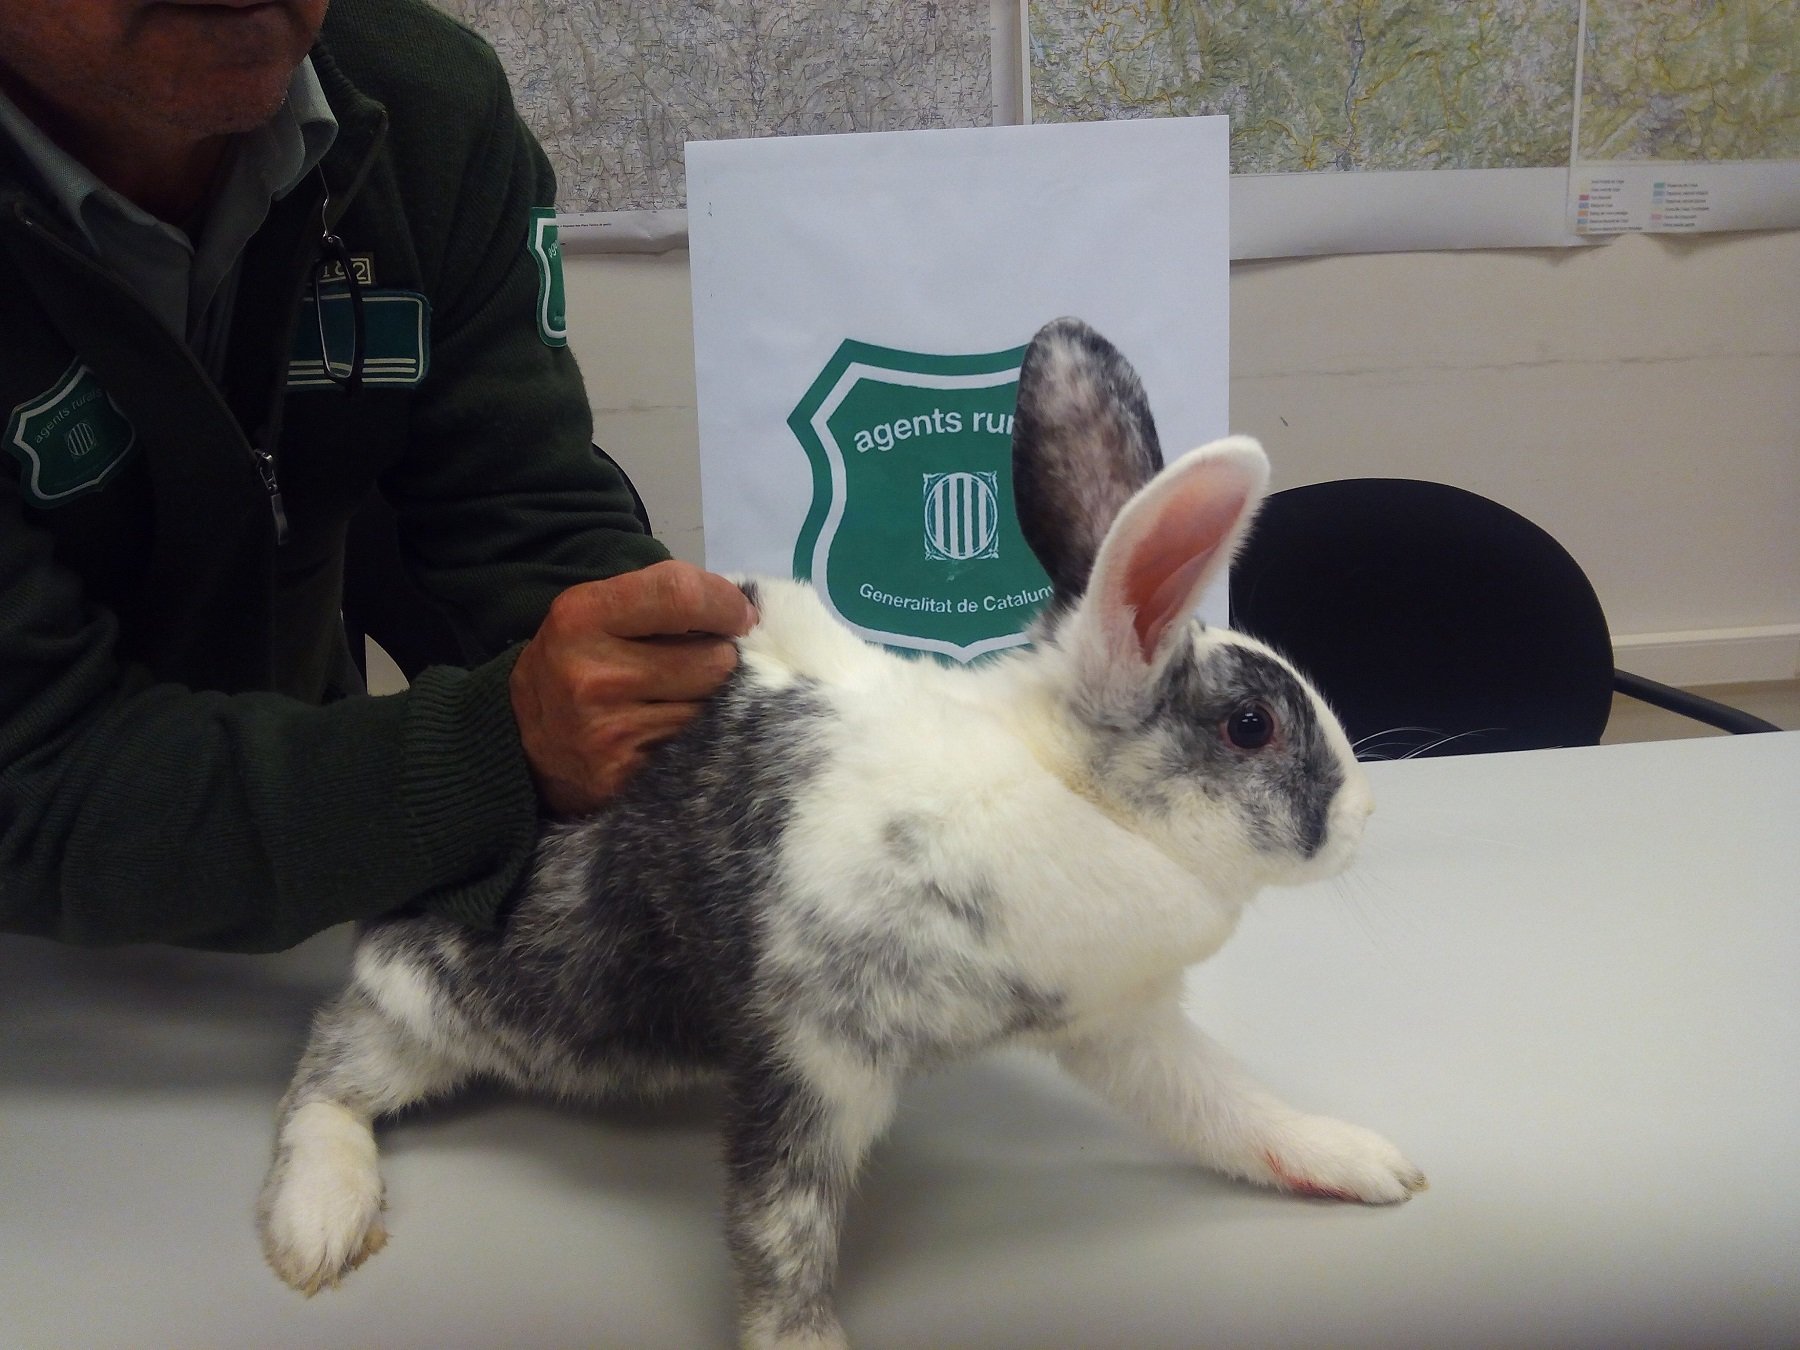 300 gàbies trampa a Lleida per capturar conills i frenar la plaga